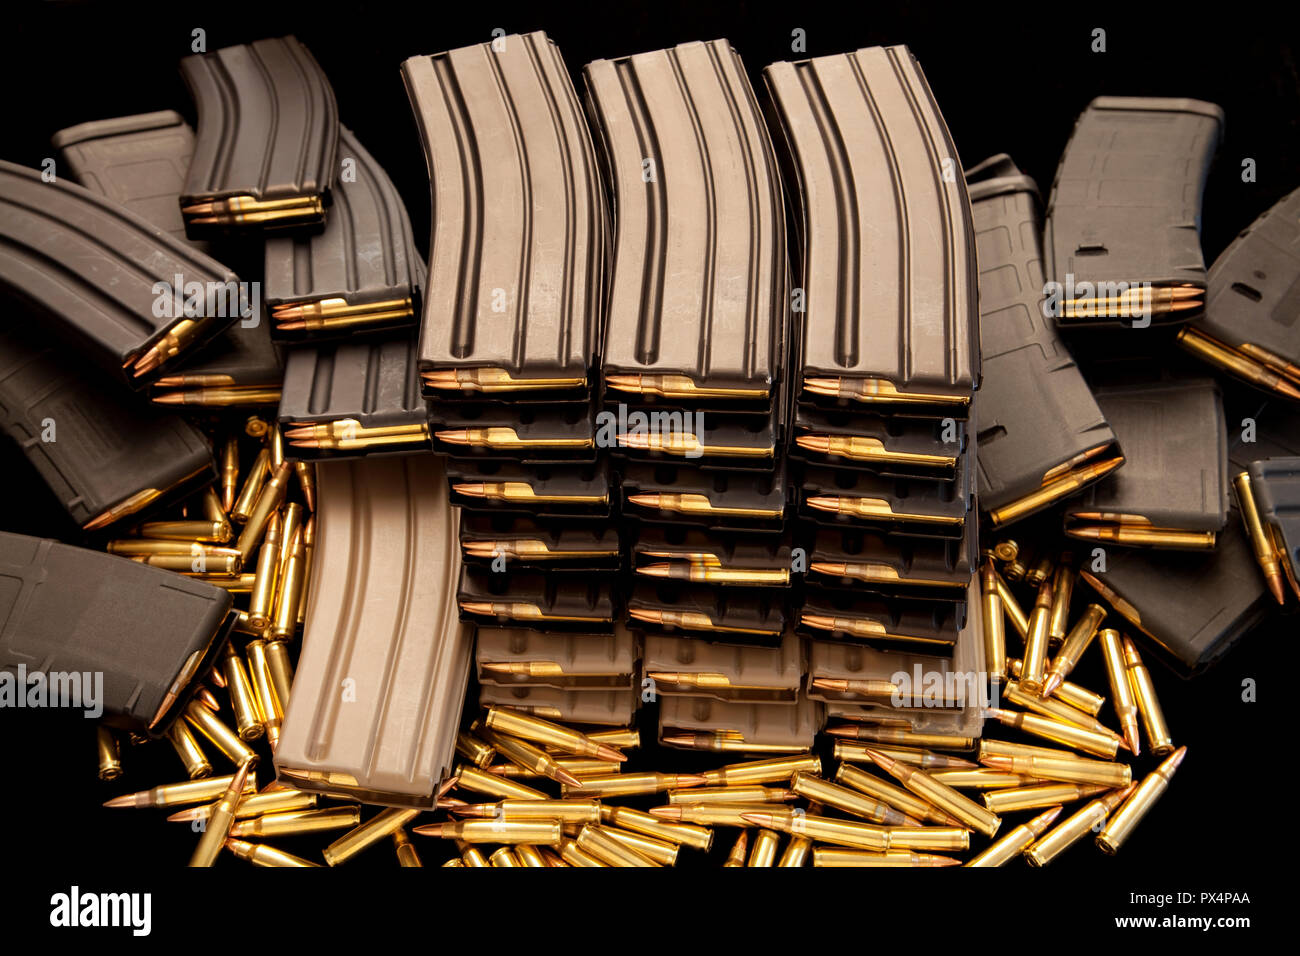 Alta capacità AR-15 caricatori di munizioni. Foto Stock